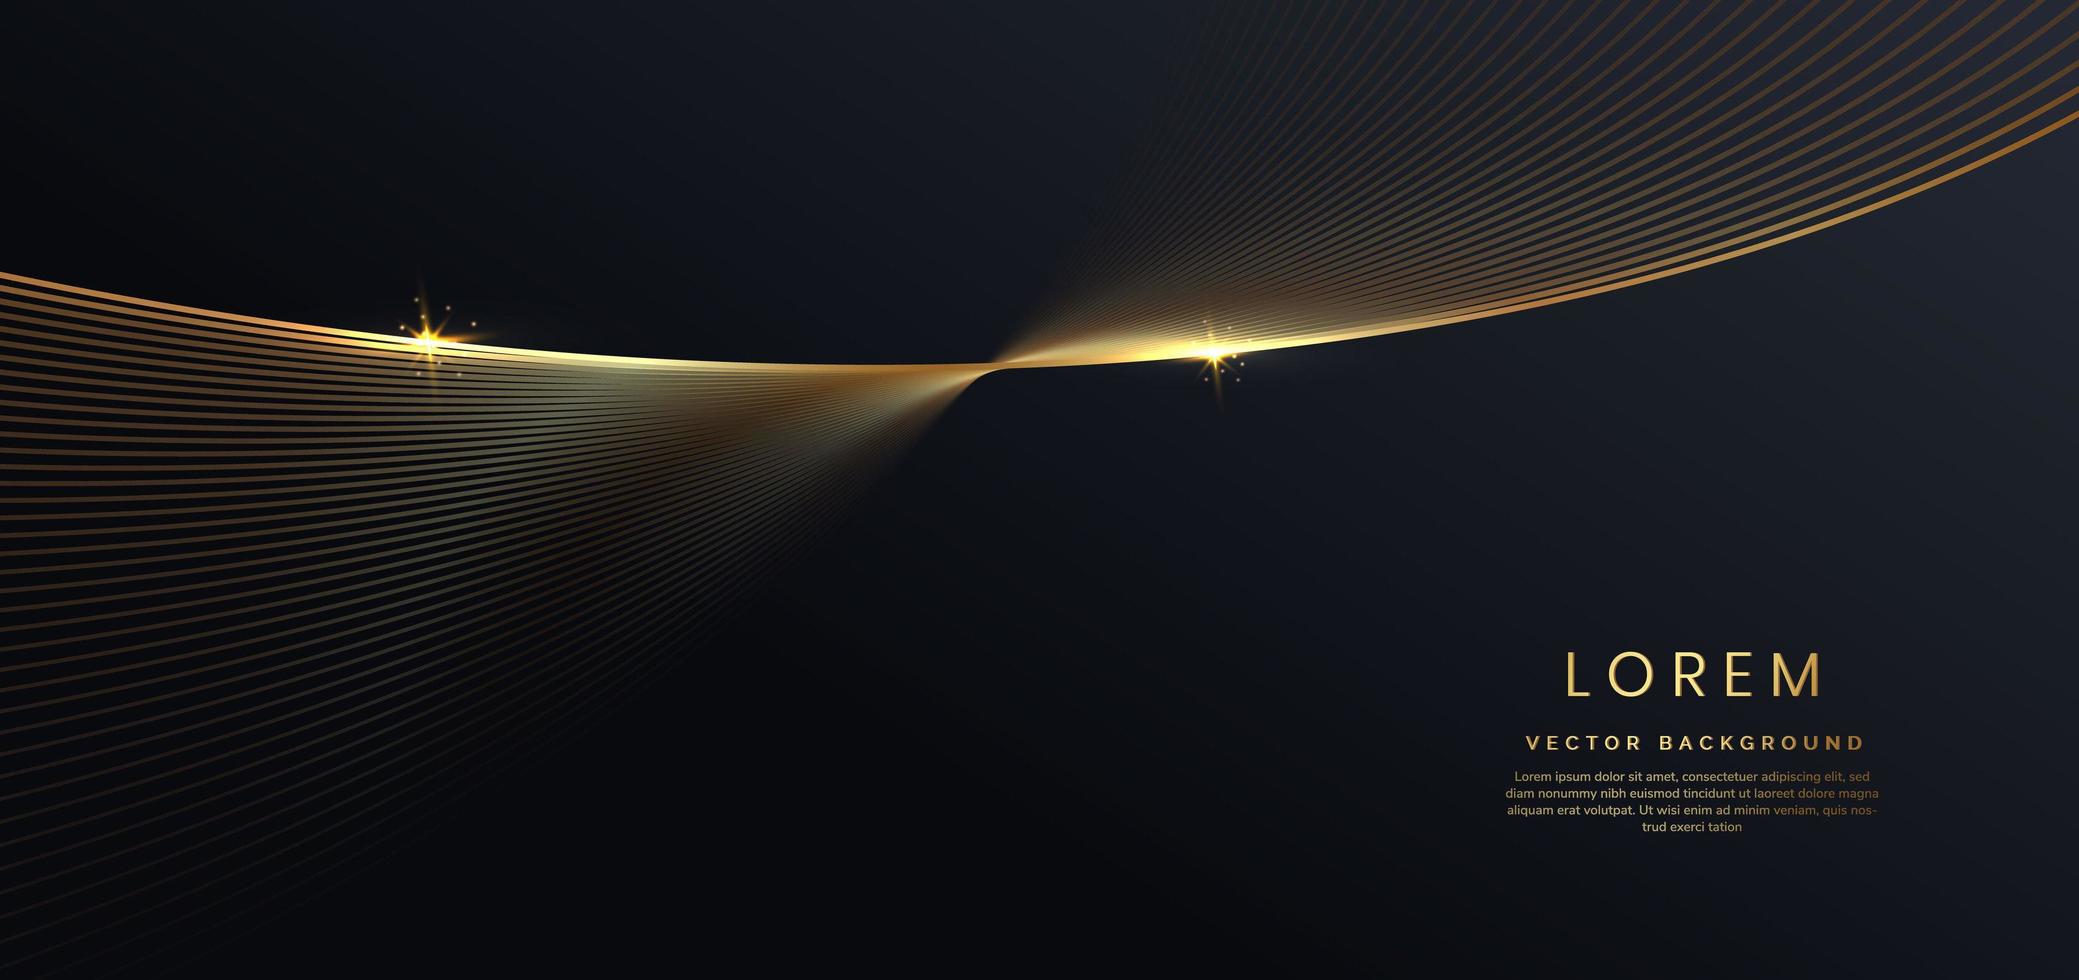 3d modelo de luxo moderno design linha de listras de onda dourada com efeito de brilho de luz em fundo preto. vetor